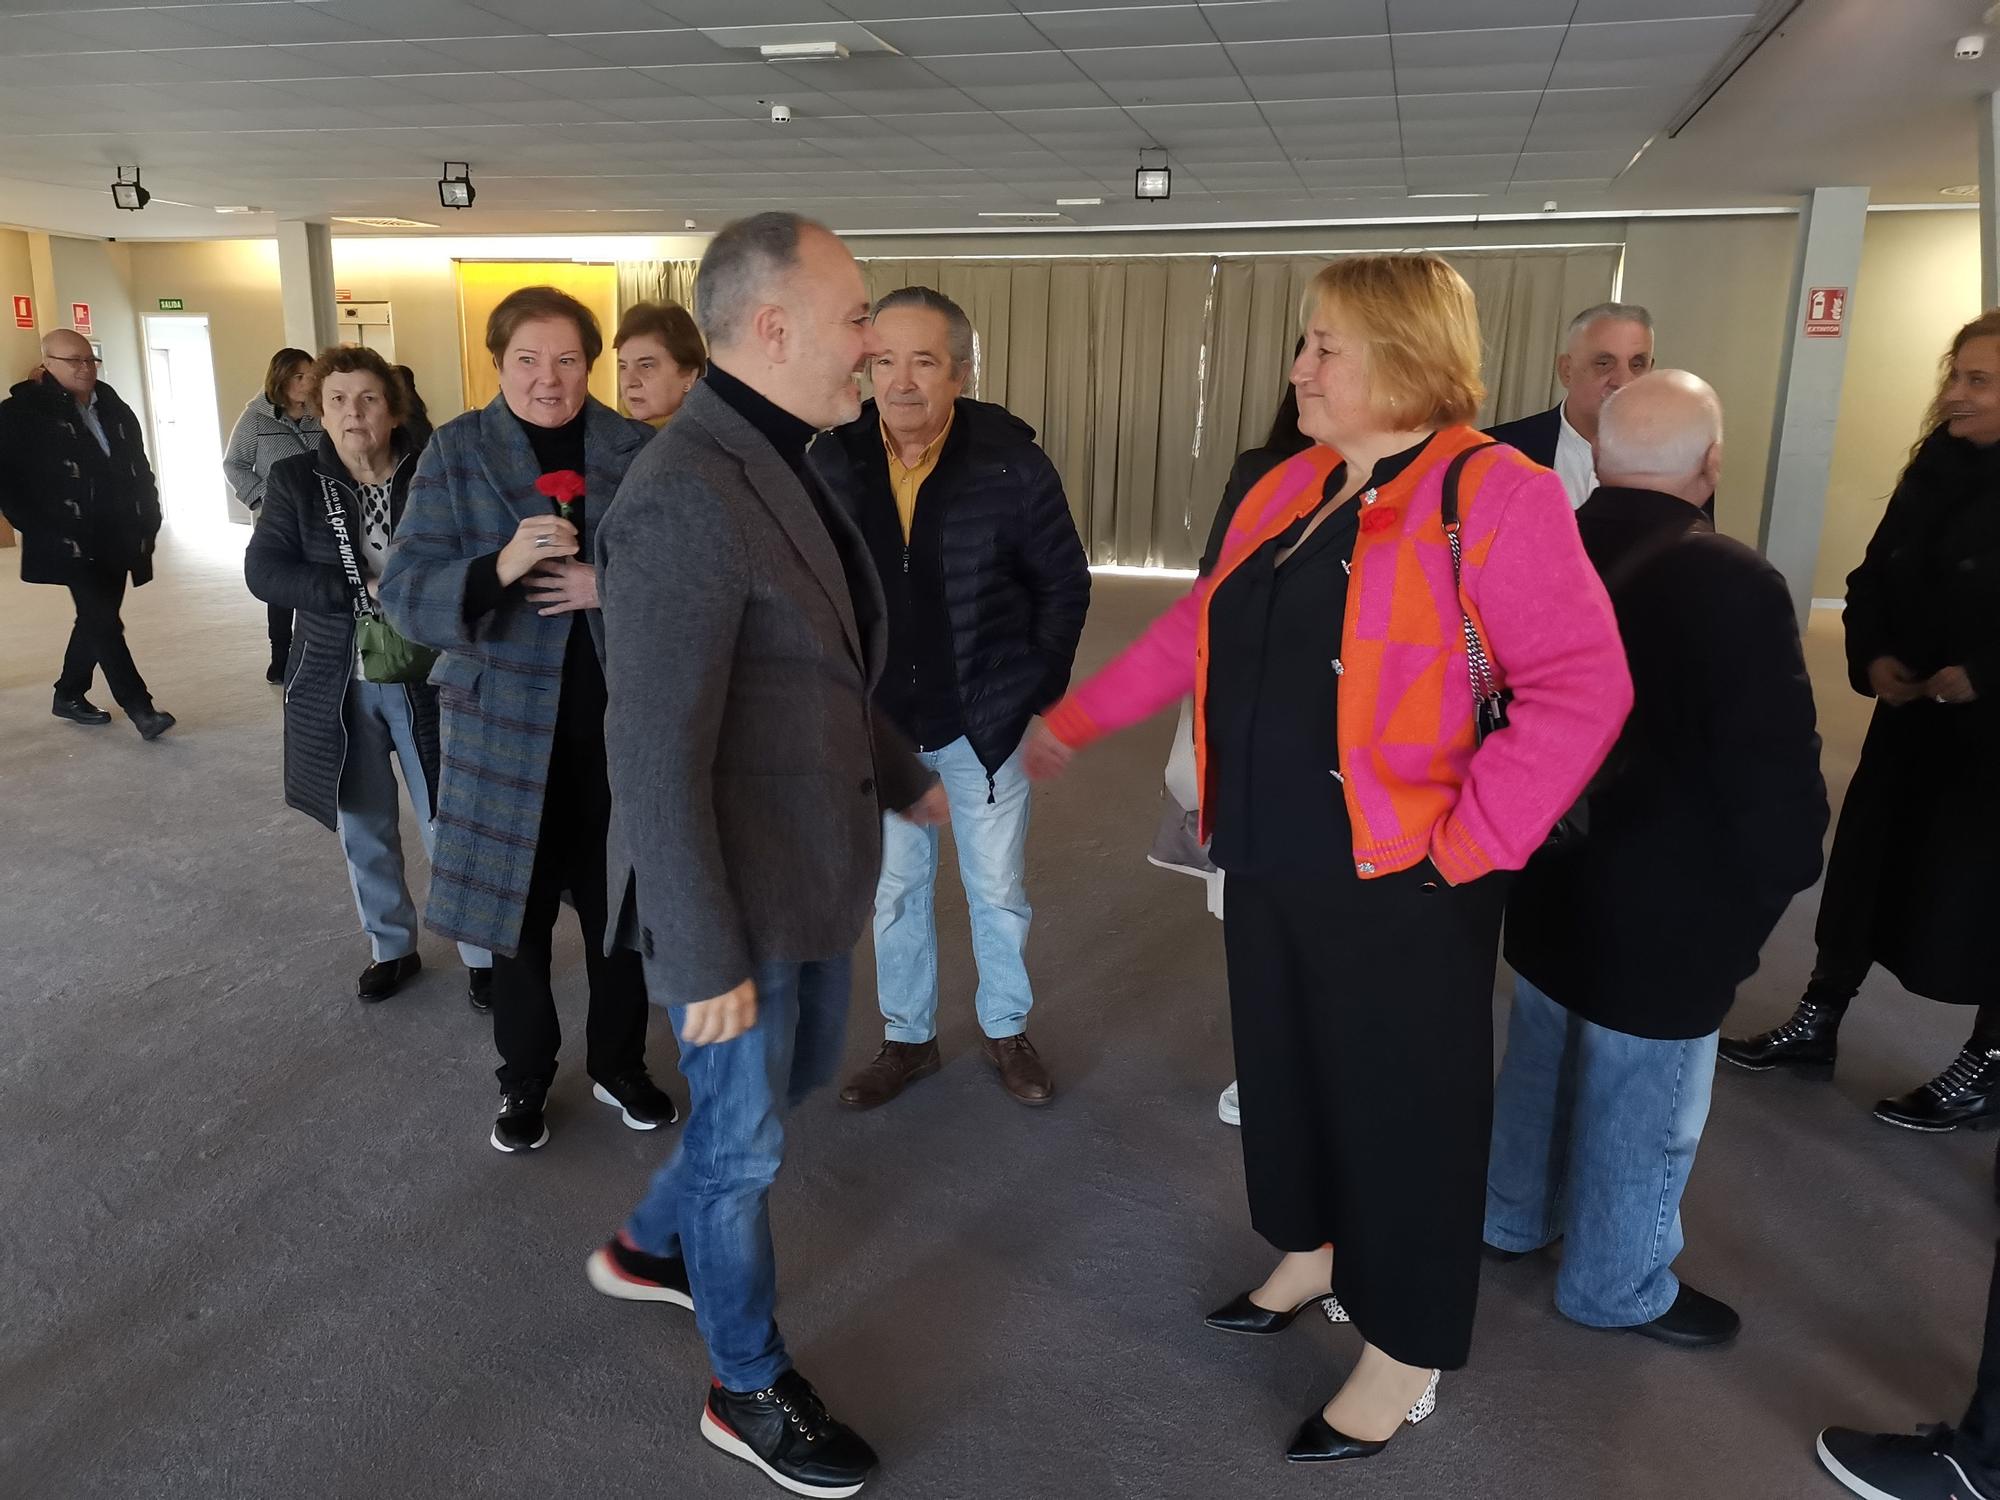 Iria Malvido ya ejerce de candidata del PSOE de Cangas